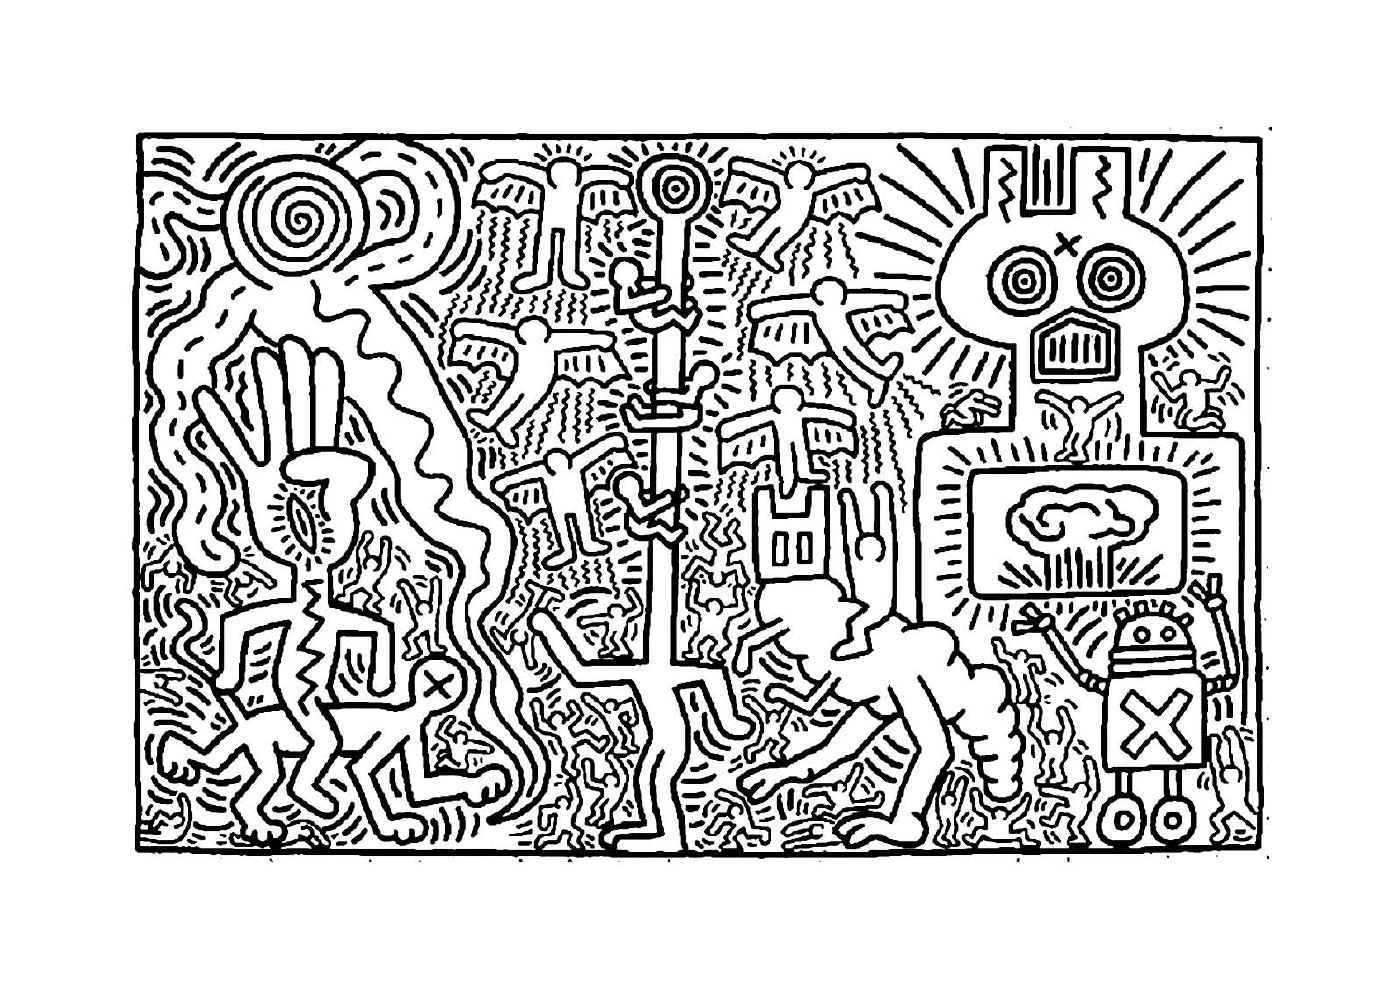  Uma obra de arte de Keith Haring 